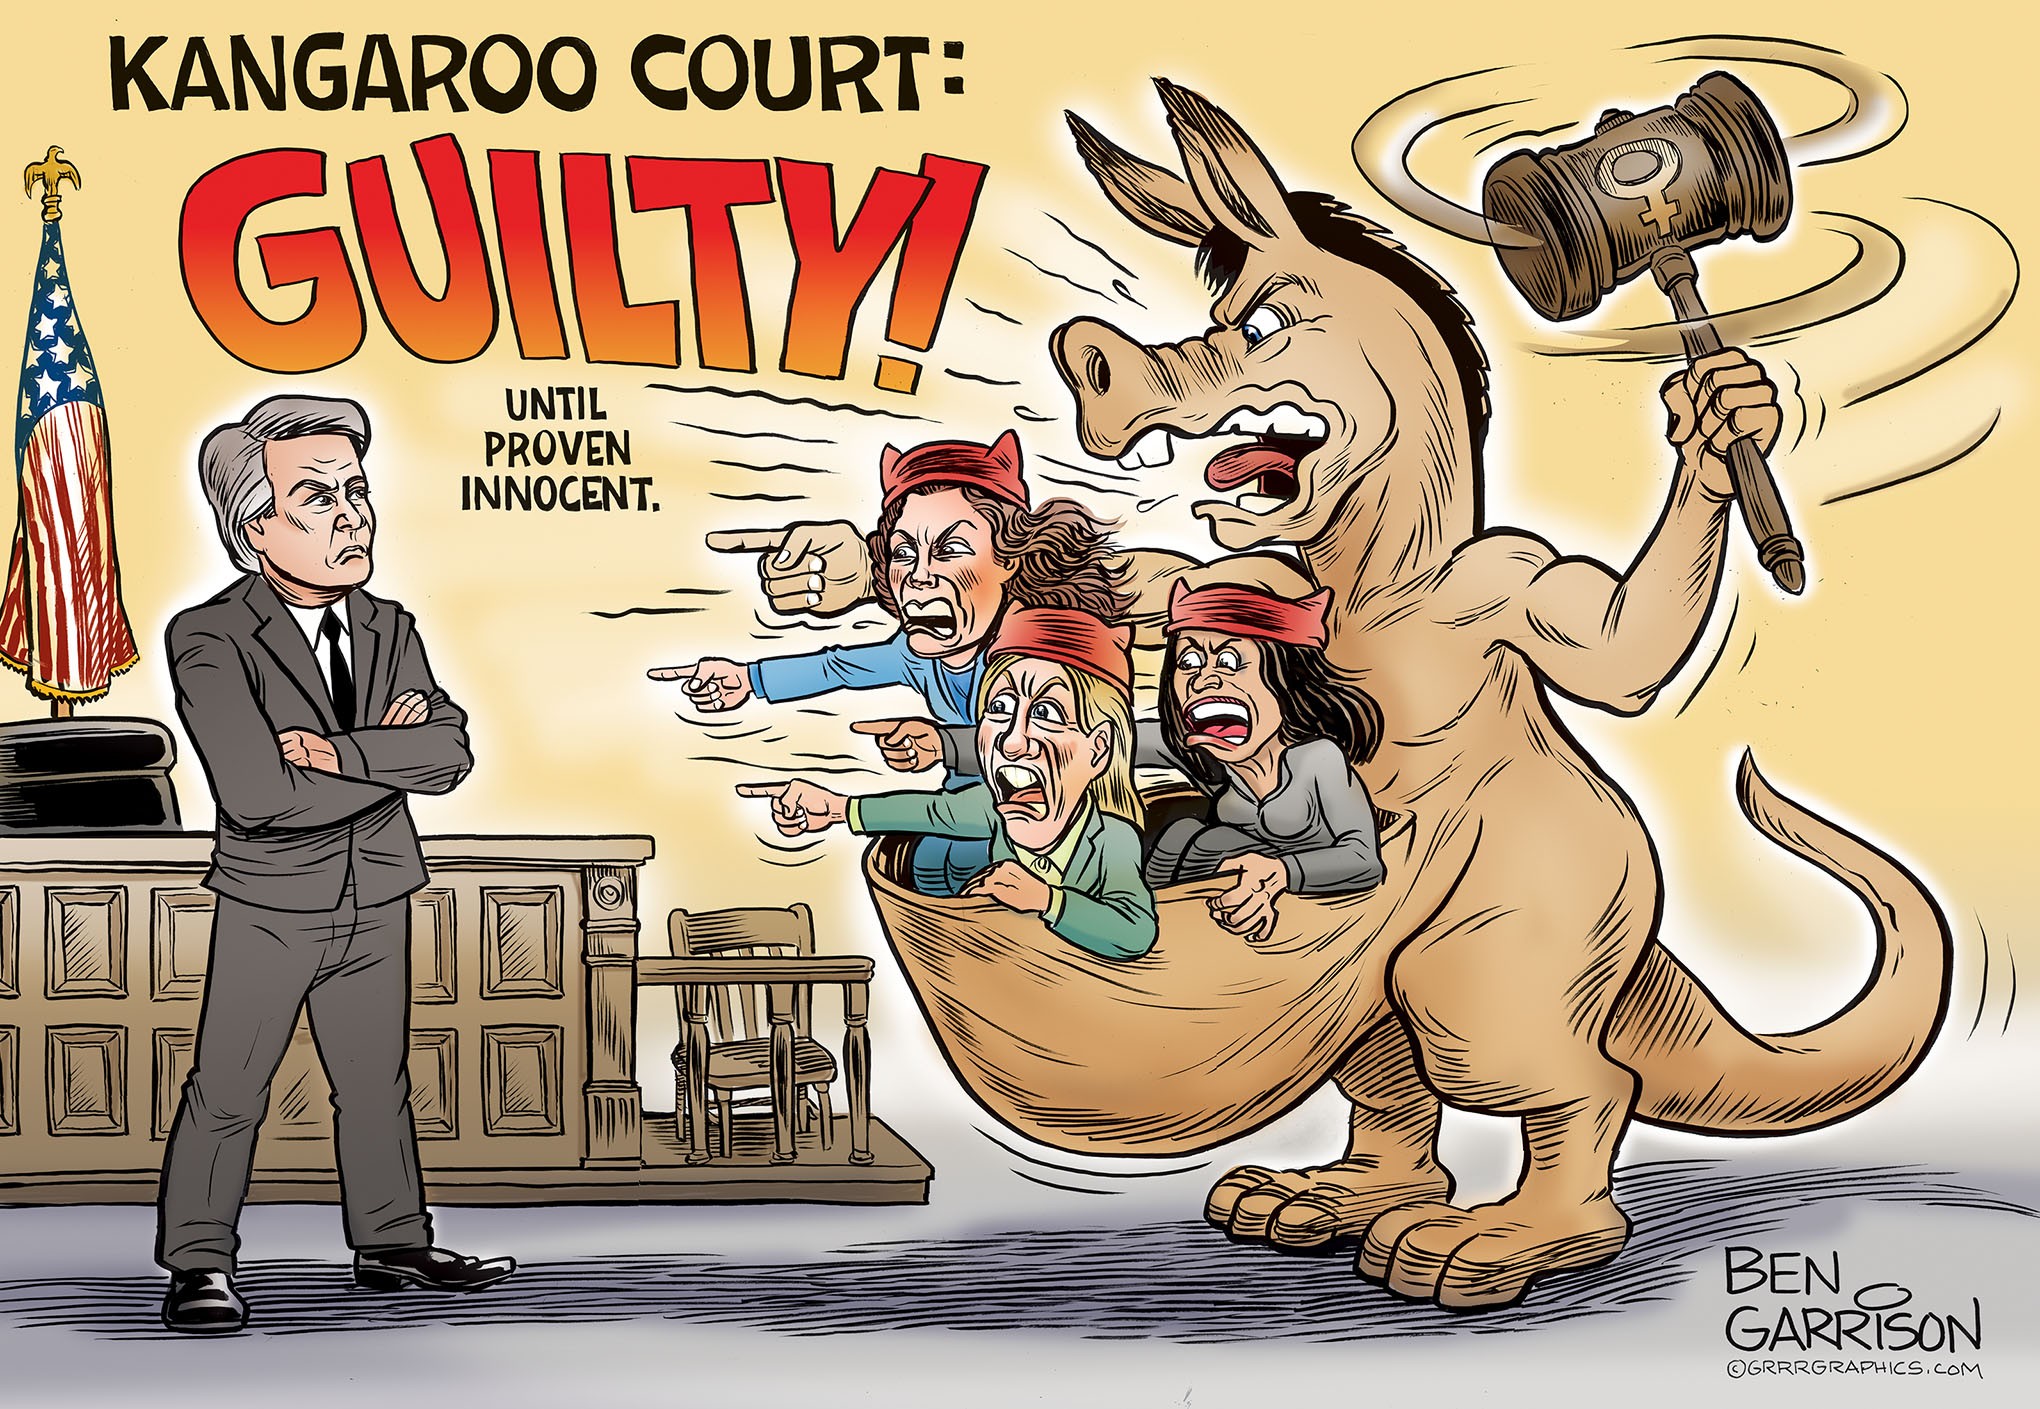 democrat kangaroo court - Kangaroo Court Guilty Until Proven Innocent. Ben Garrison Exrrroaphiclo